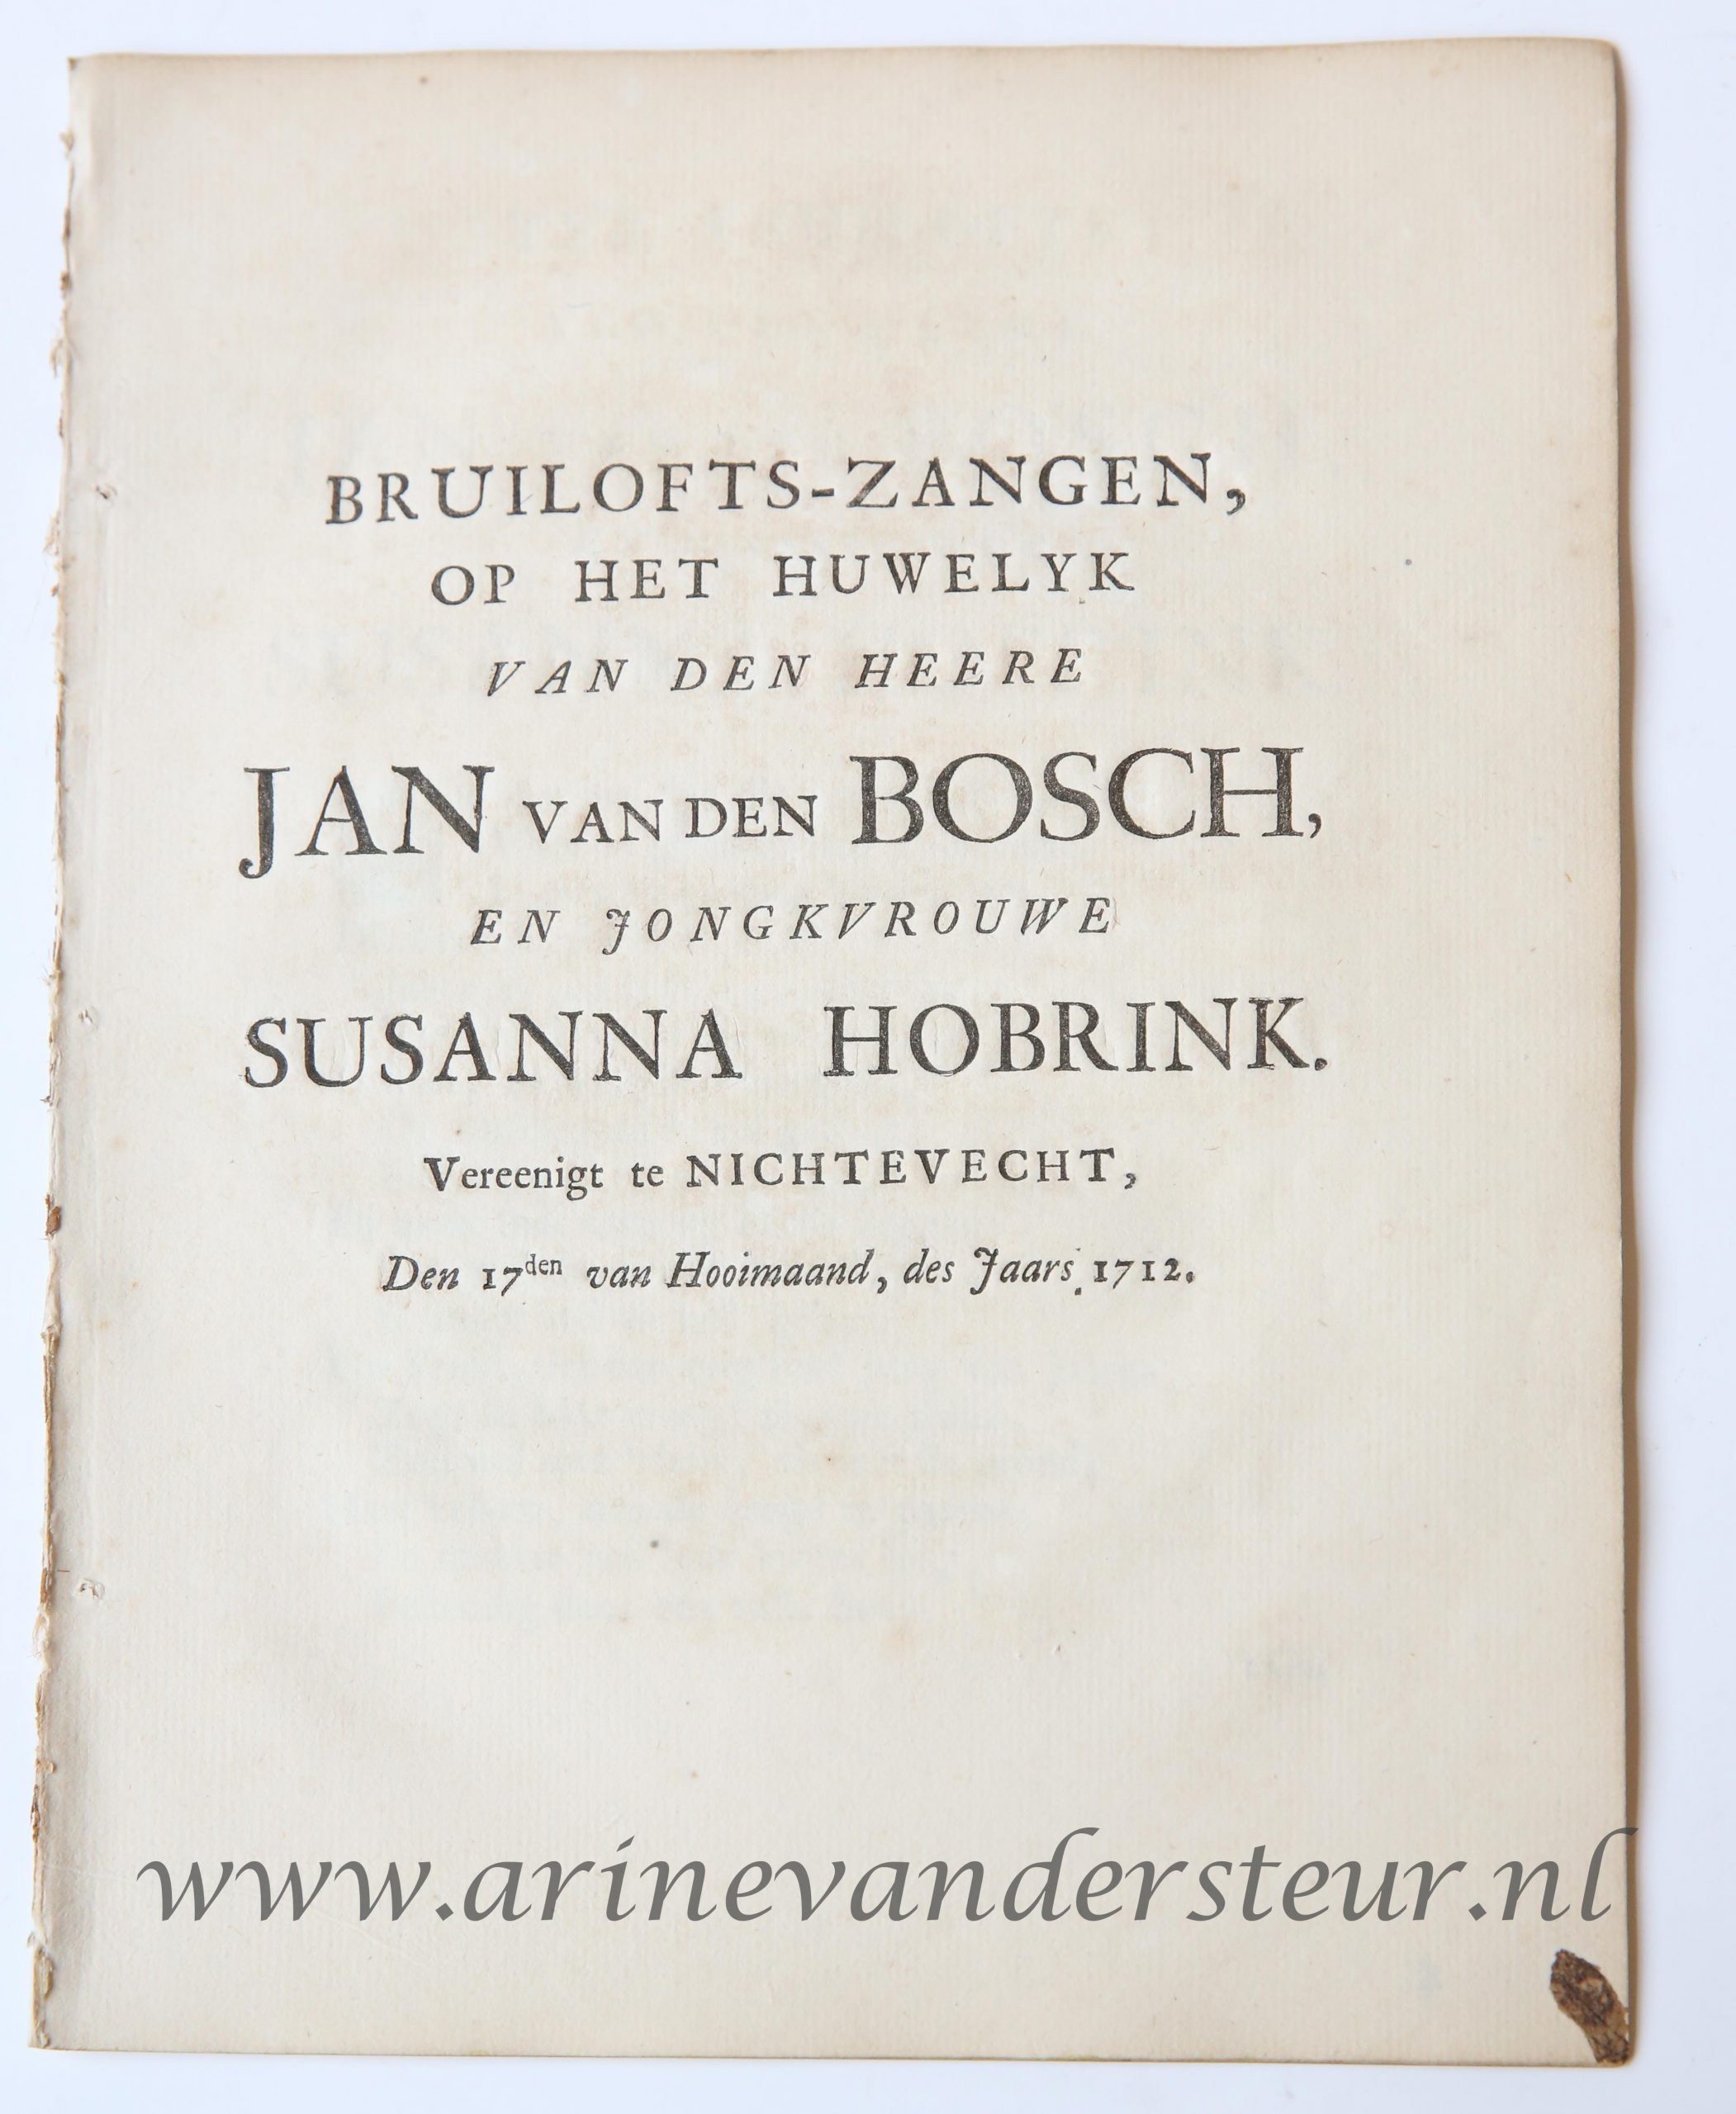  - Bruilofts-zangen op het huwelijk van den heere Jan Van den bosch en Jongkvrouwe Susanna Hobrink, vereenigt te Nigtevecht, den 17den van hooimaand des jaars 1712. z.p. 4: [20] p.